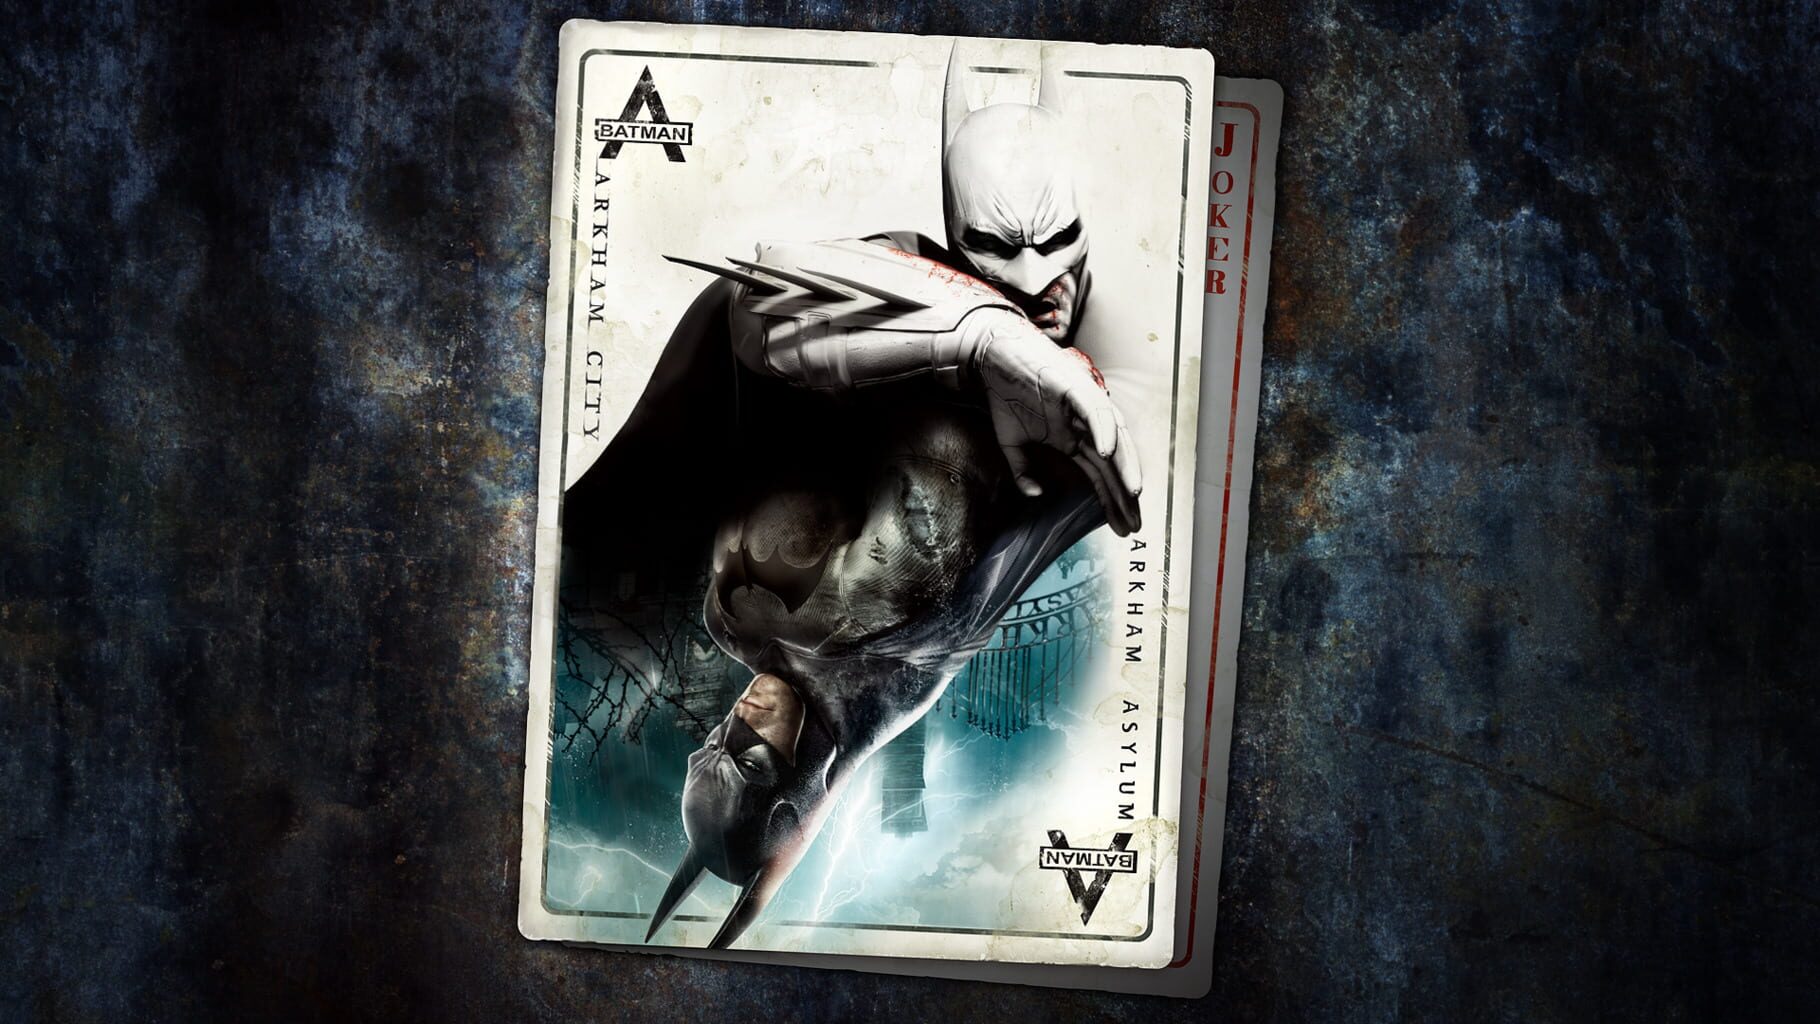 Artwork for Batman: Return to Arkham